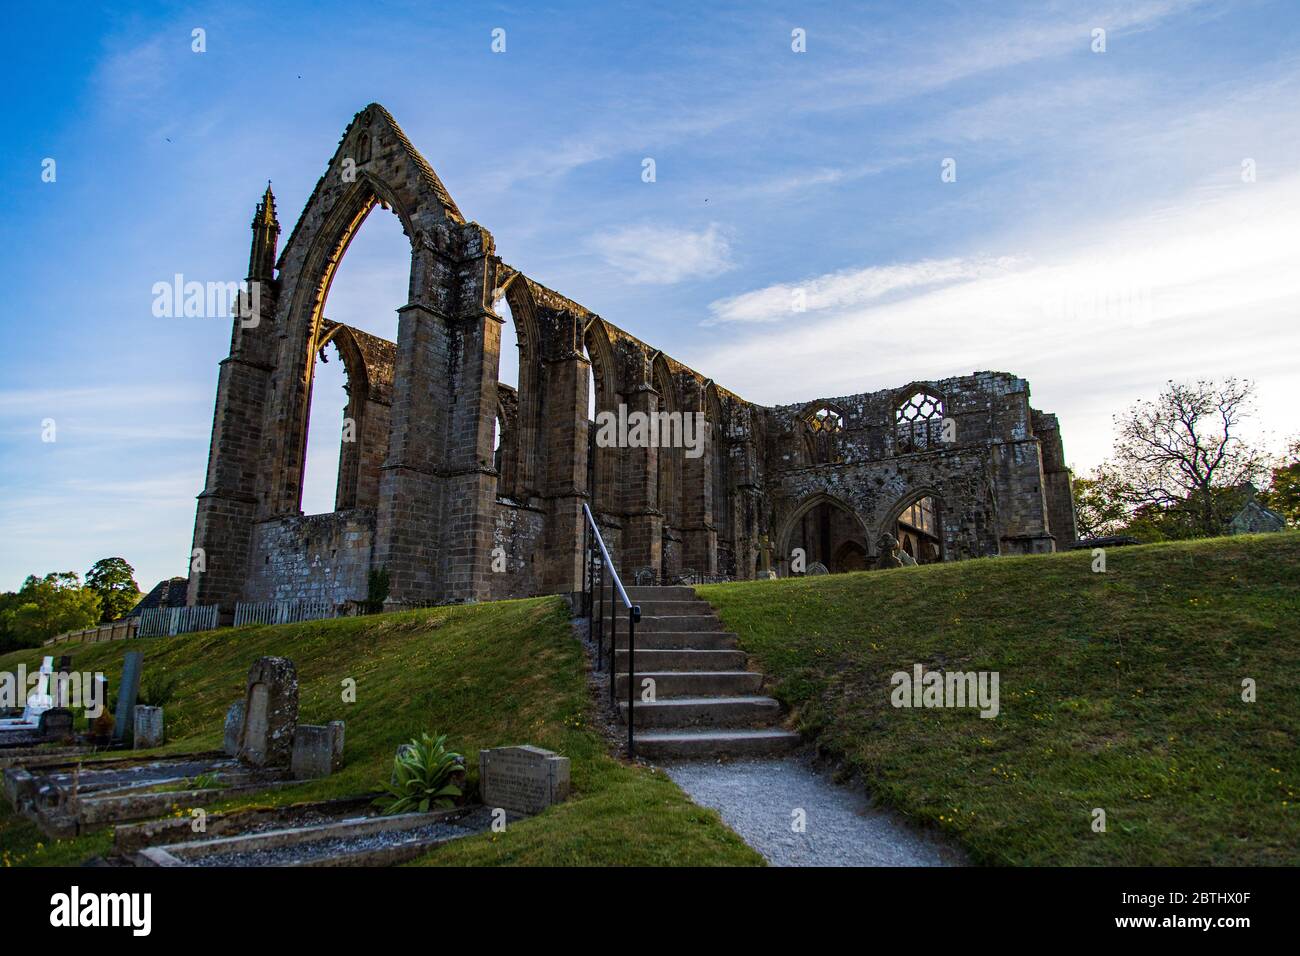 Bolton Abbey, Wharfedale, North Yorkshire, Angleterre. Les ruines du monastère Augustinien du XIIe siècle, aujourd'hui connu sous le nom de Prieuré de Bolton Banque D'Images